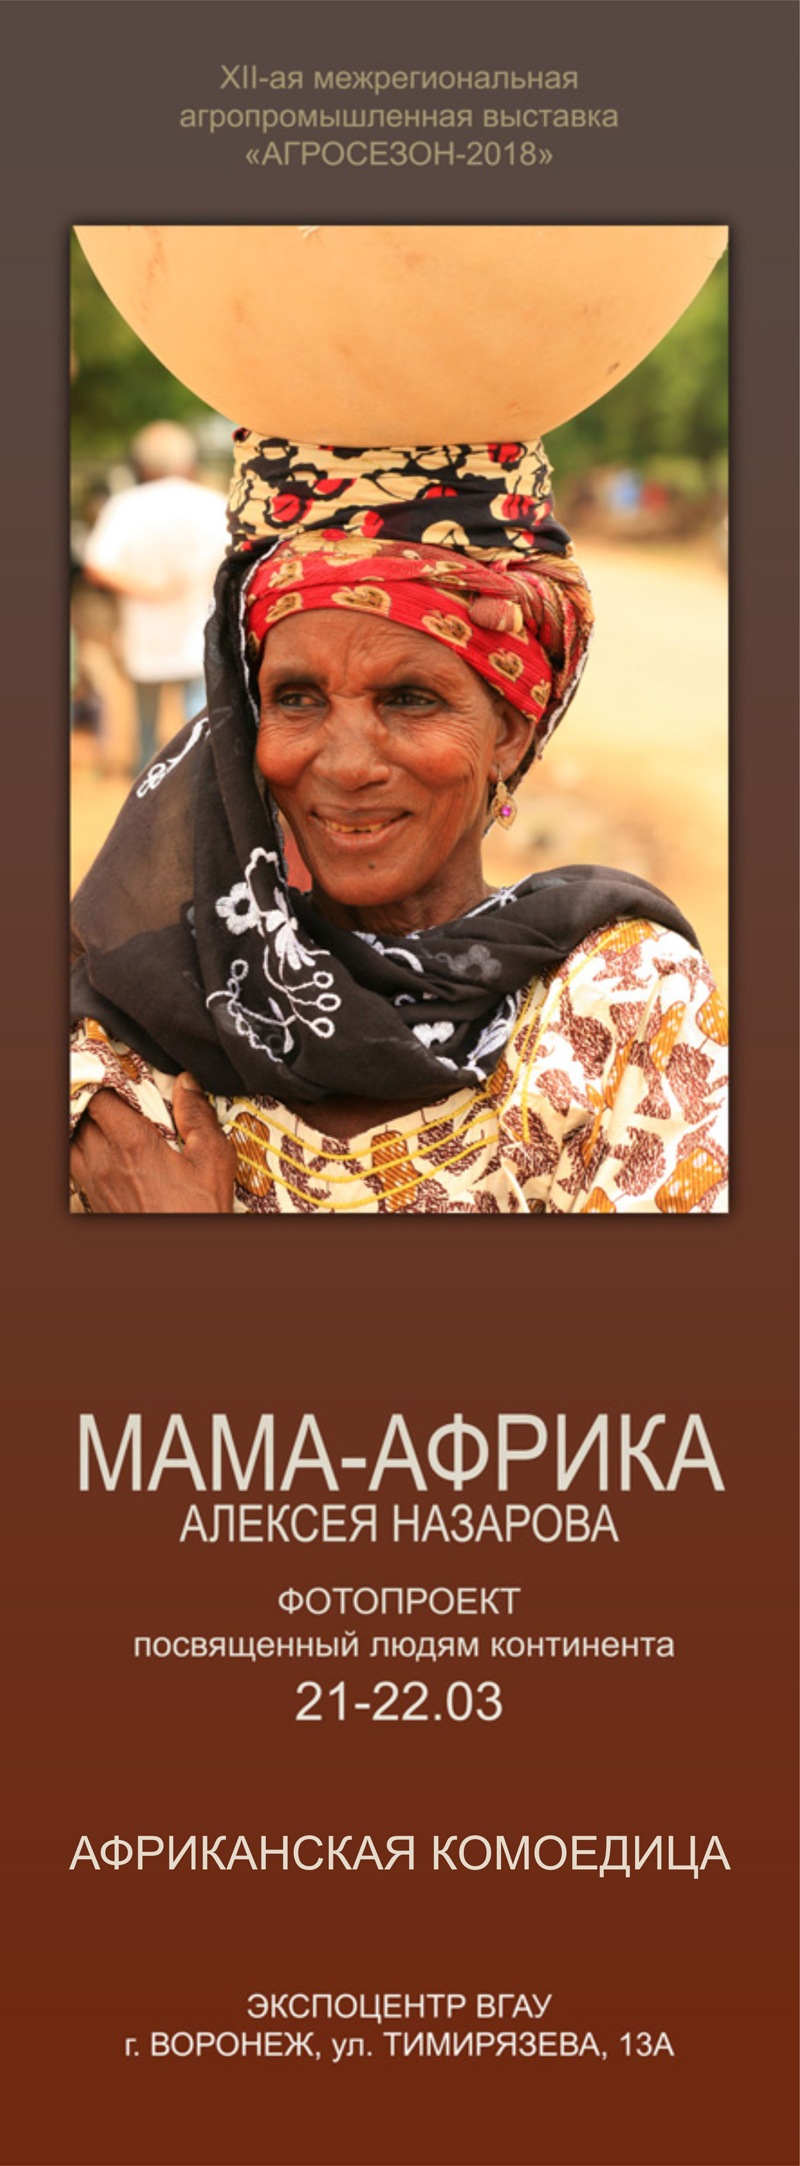 Мама-Африка